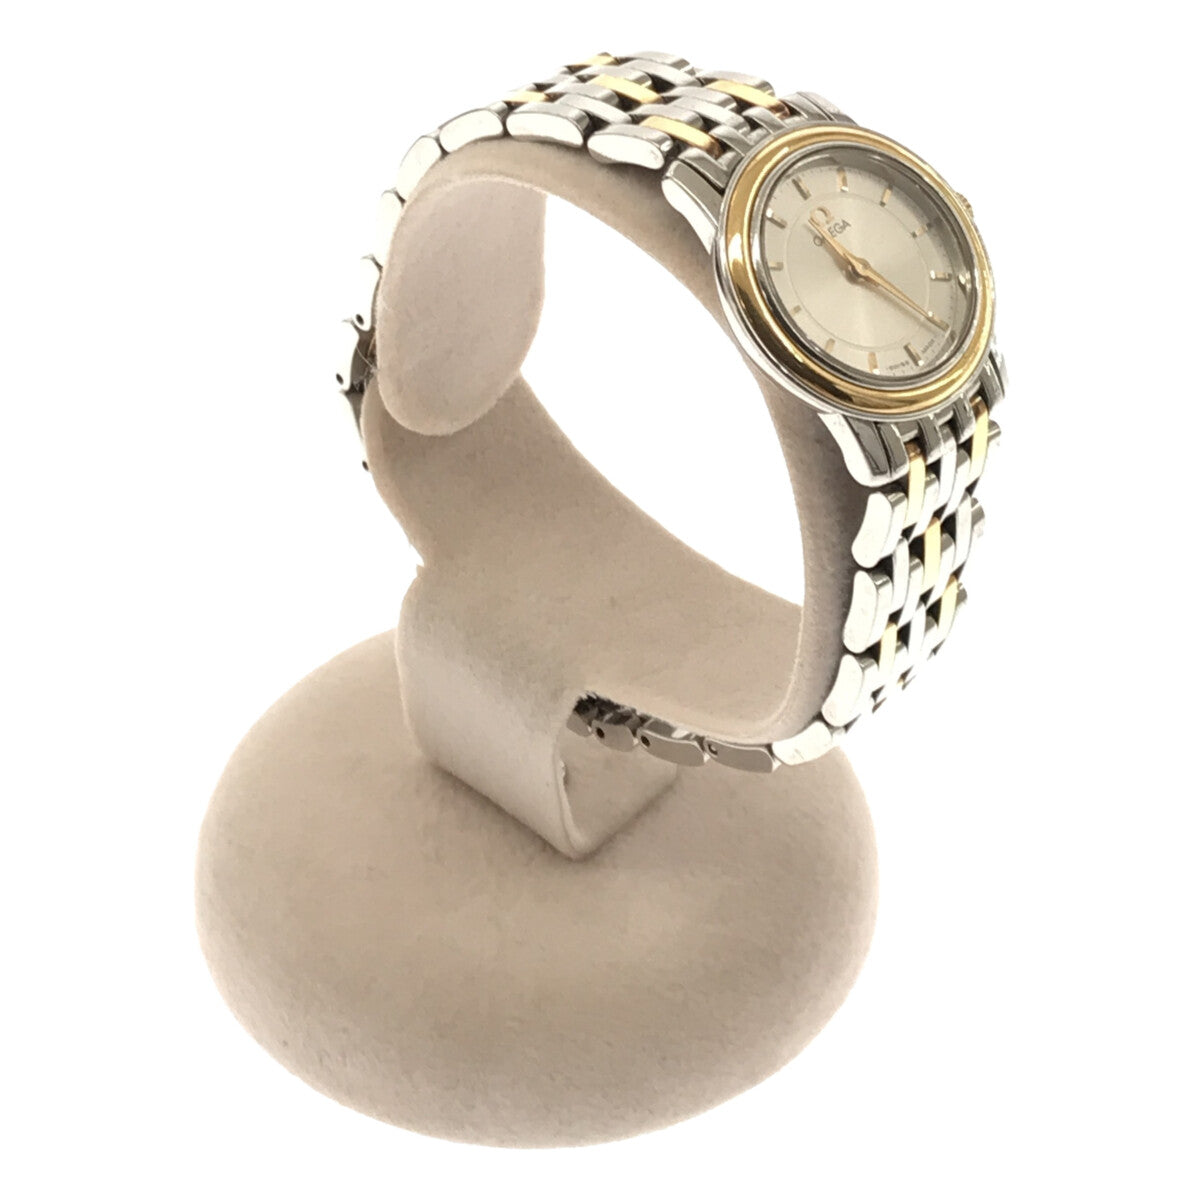 ファッション小物オメガ 腕時計 デビル レディース シルバー